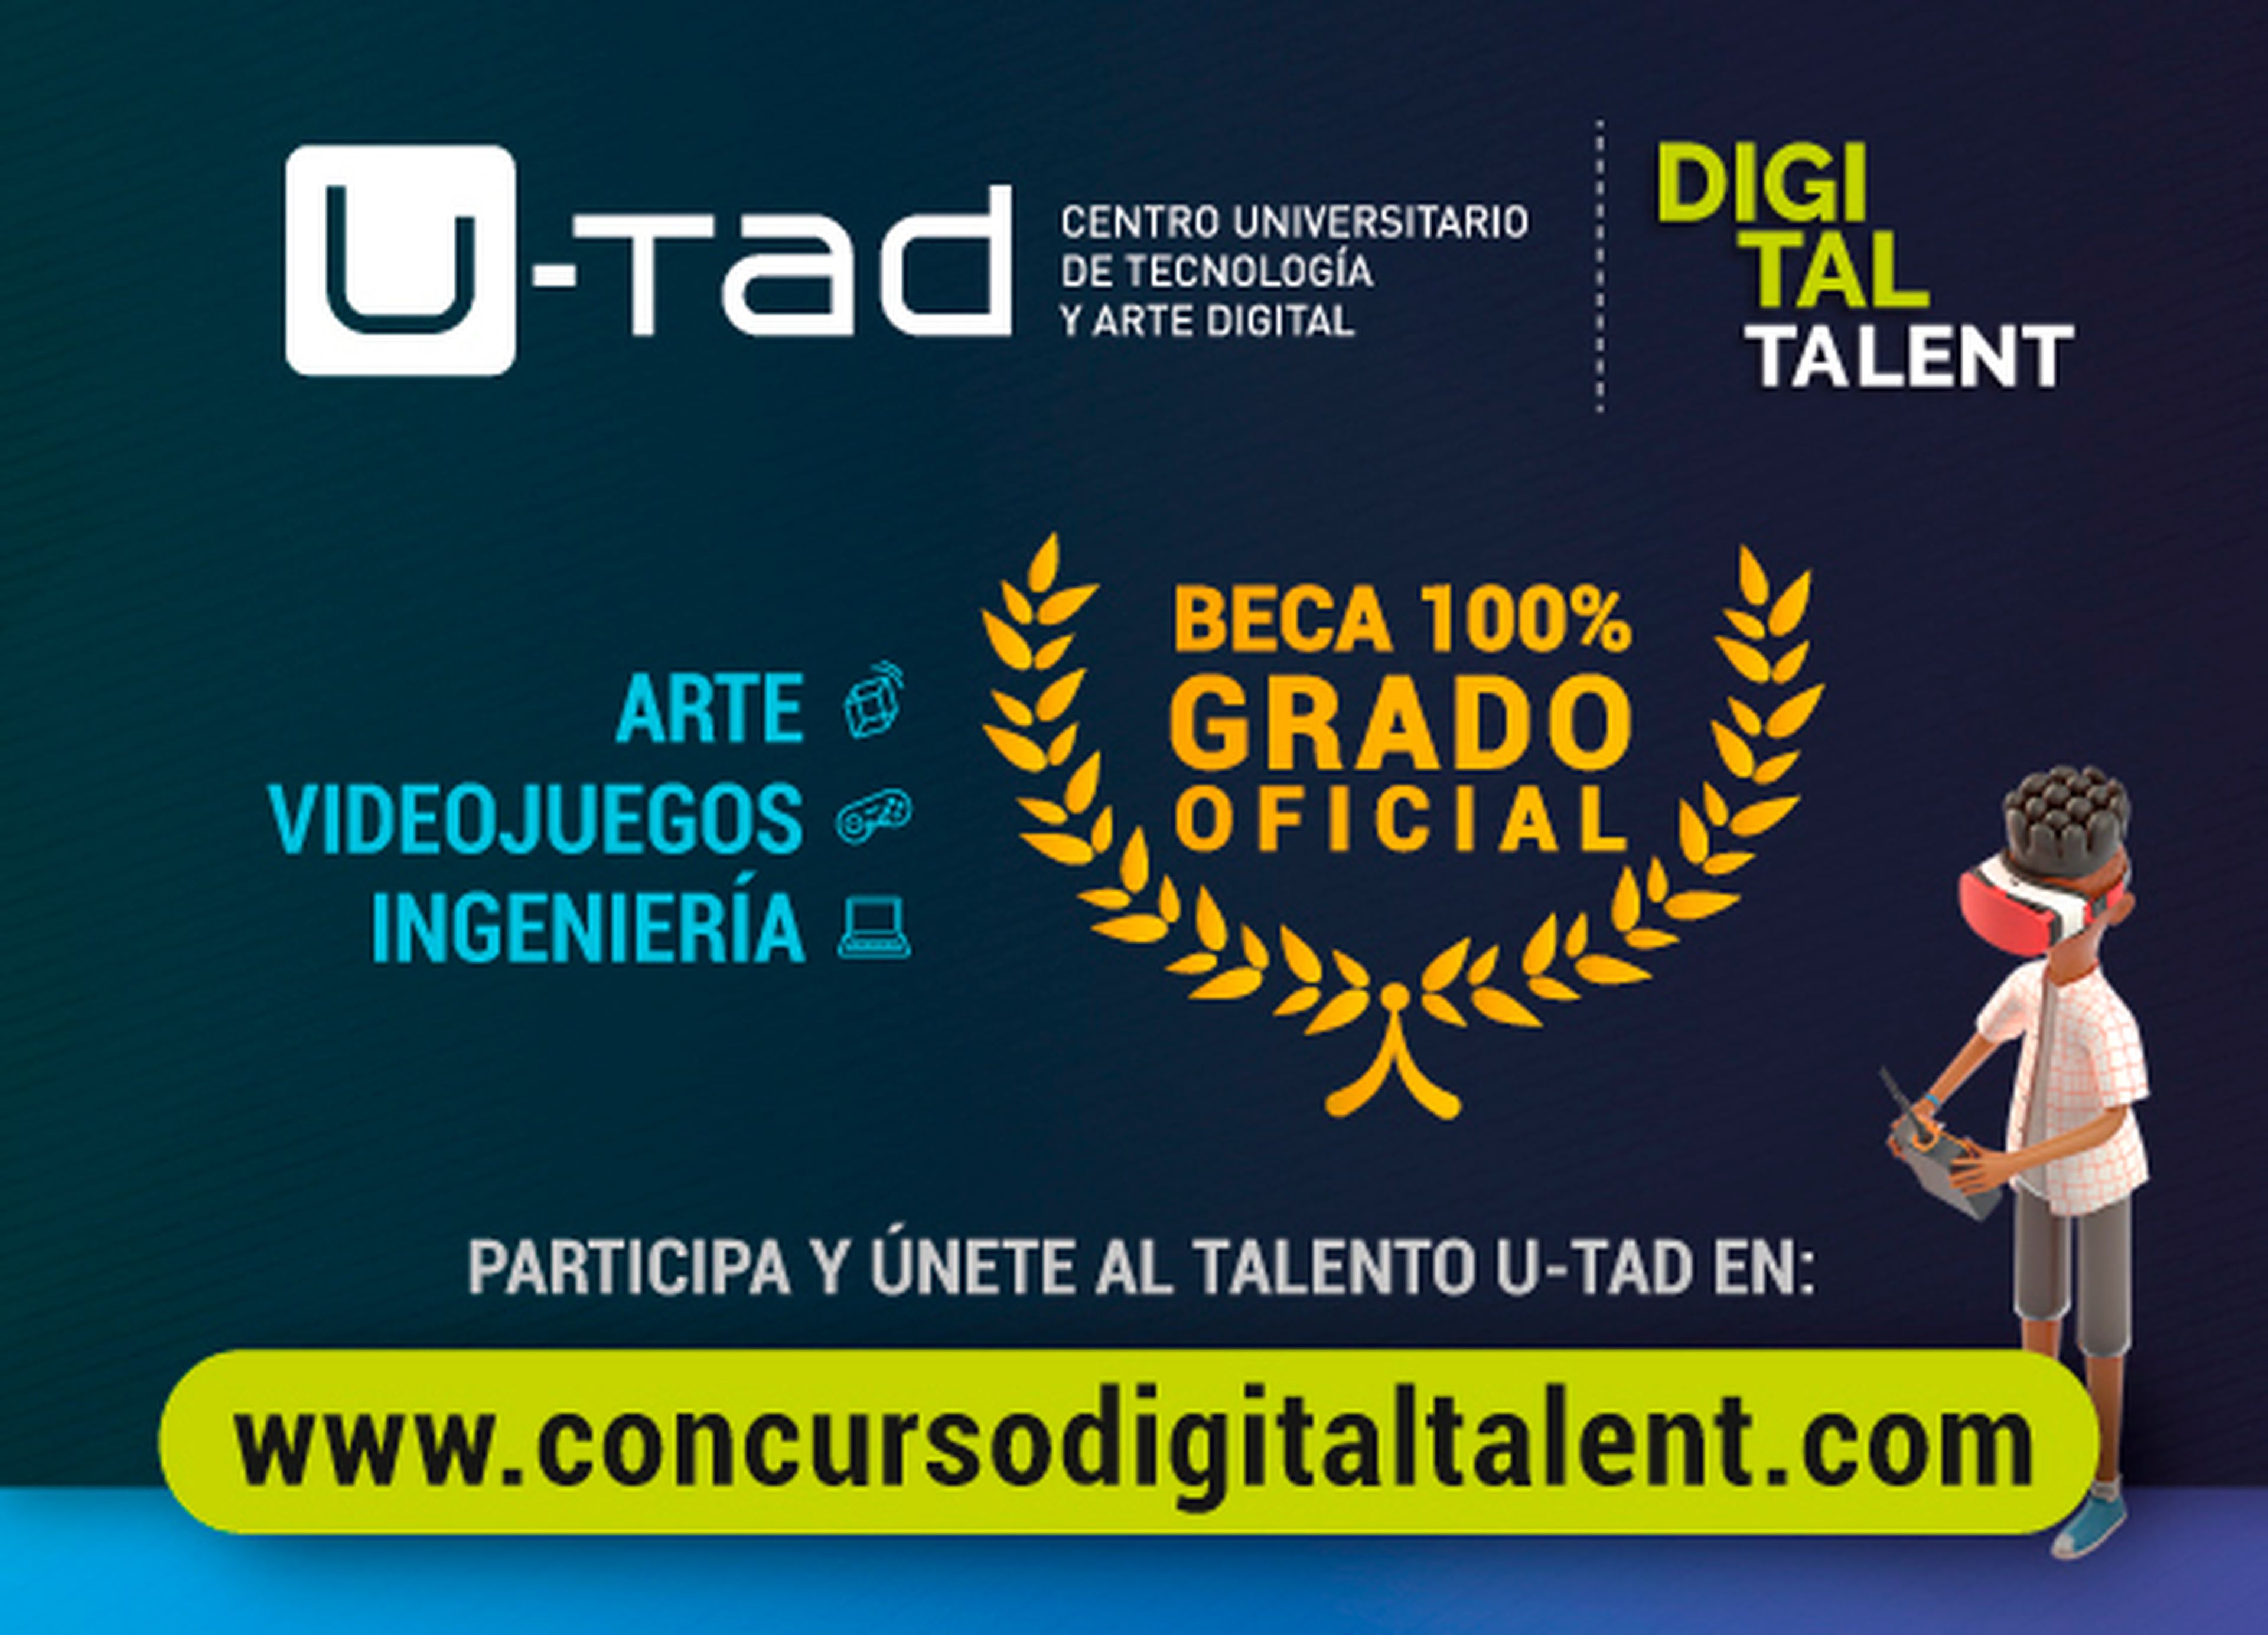 Concurso Digital Talent de U-tad